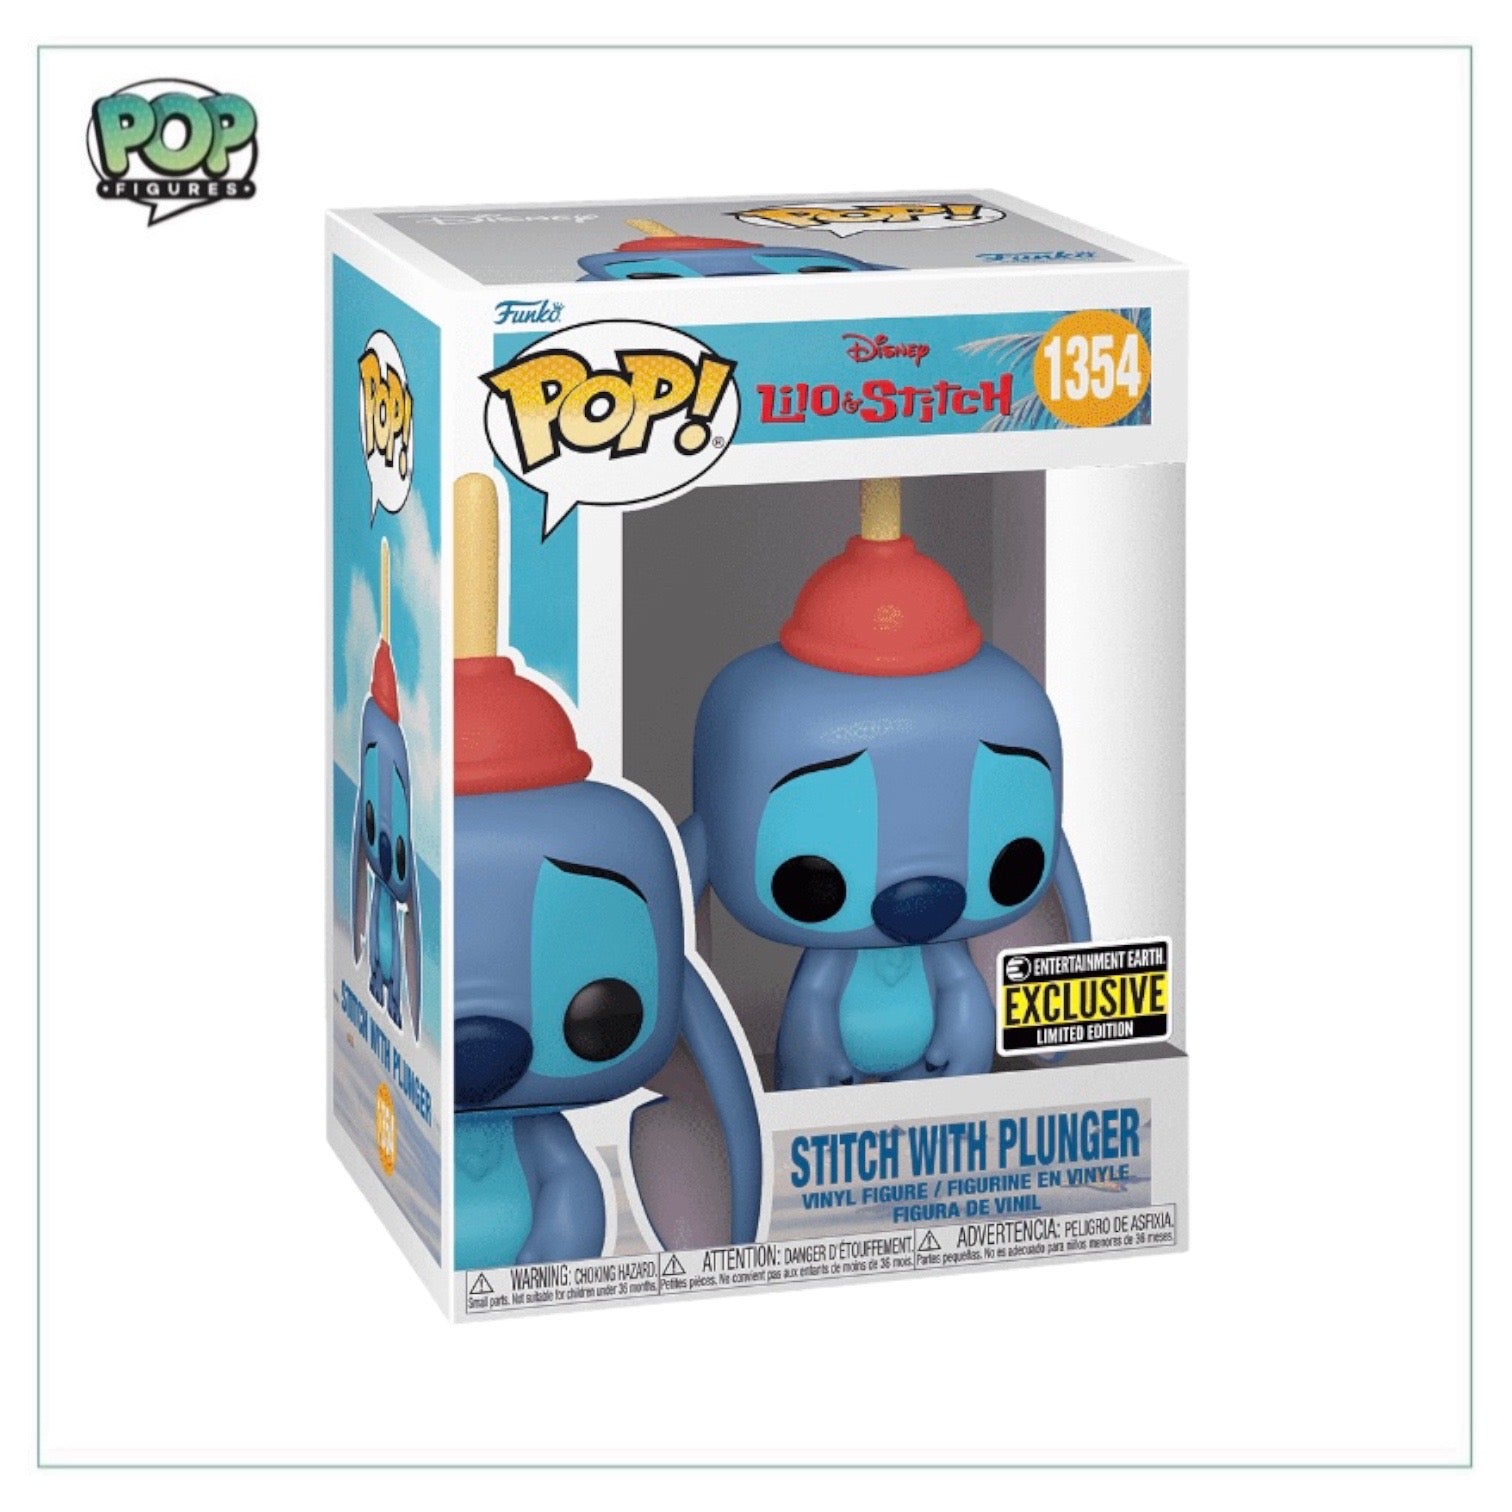 Funko Pop! Disney Lilo & Stitch - Stitch with Frog #986 (FYE Exclusive